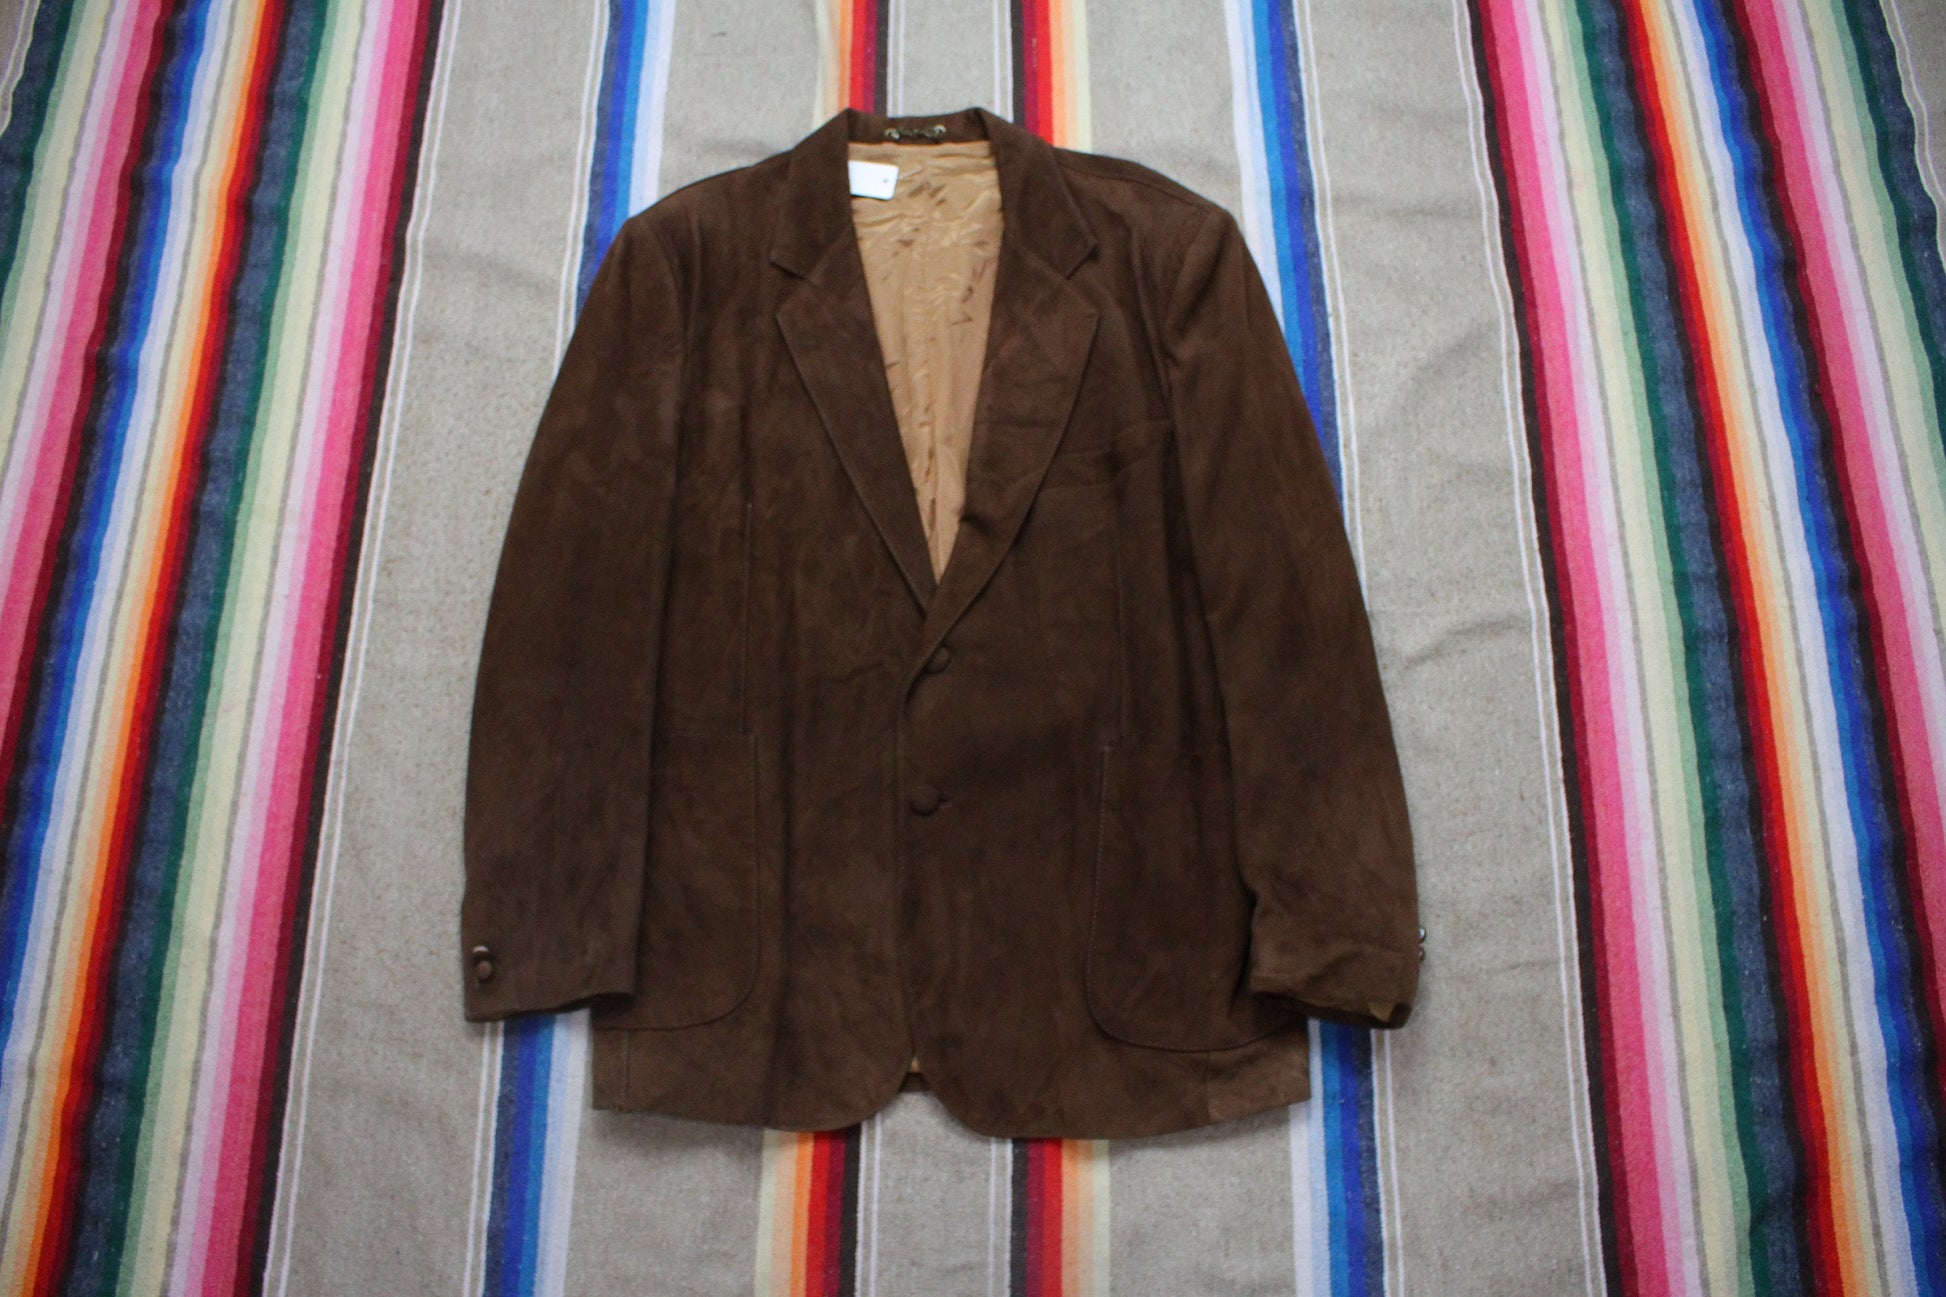 1970s Brown Suede Blazer Jacket Size M/L